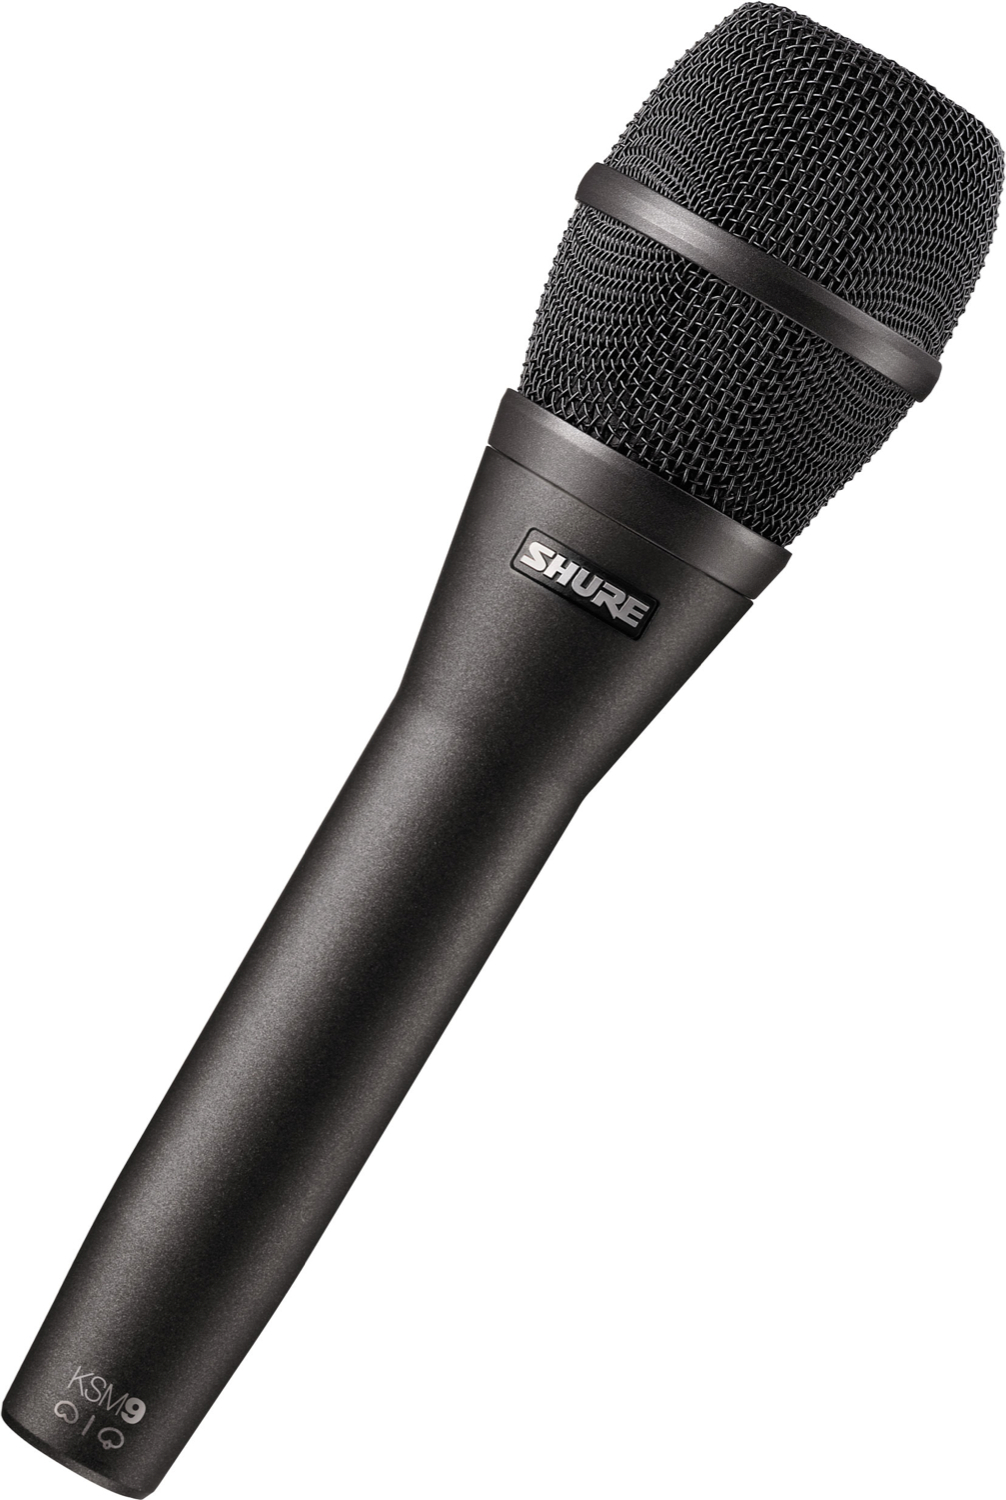 Черный микрофон купить. Shure ksm9/CG. Shure ksm9 радиосистема. Микрофон Behringer xm8500. Shure qlxd24e/ksm9 g51.